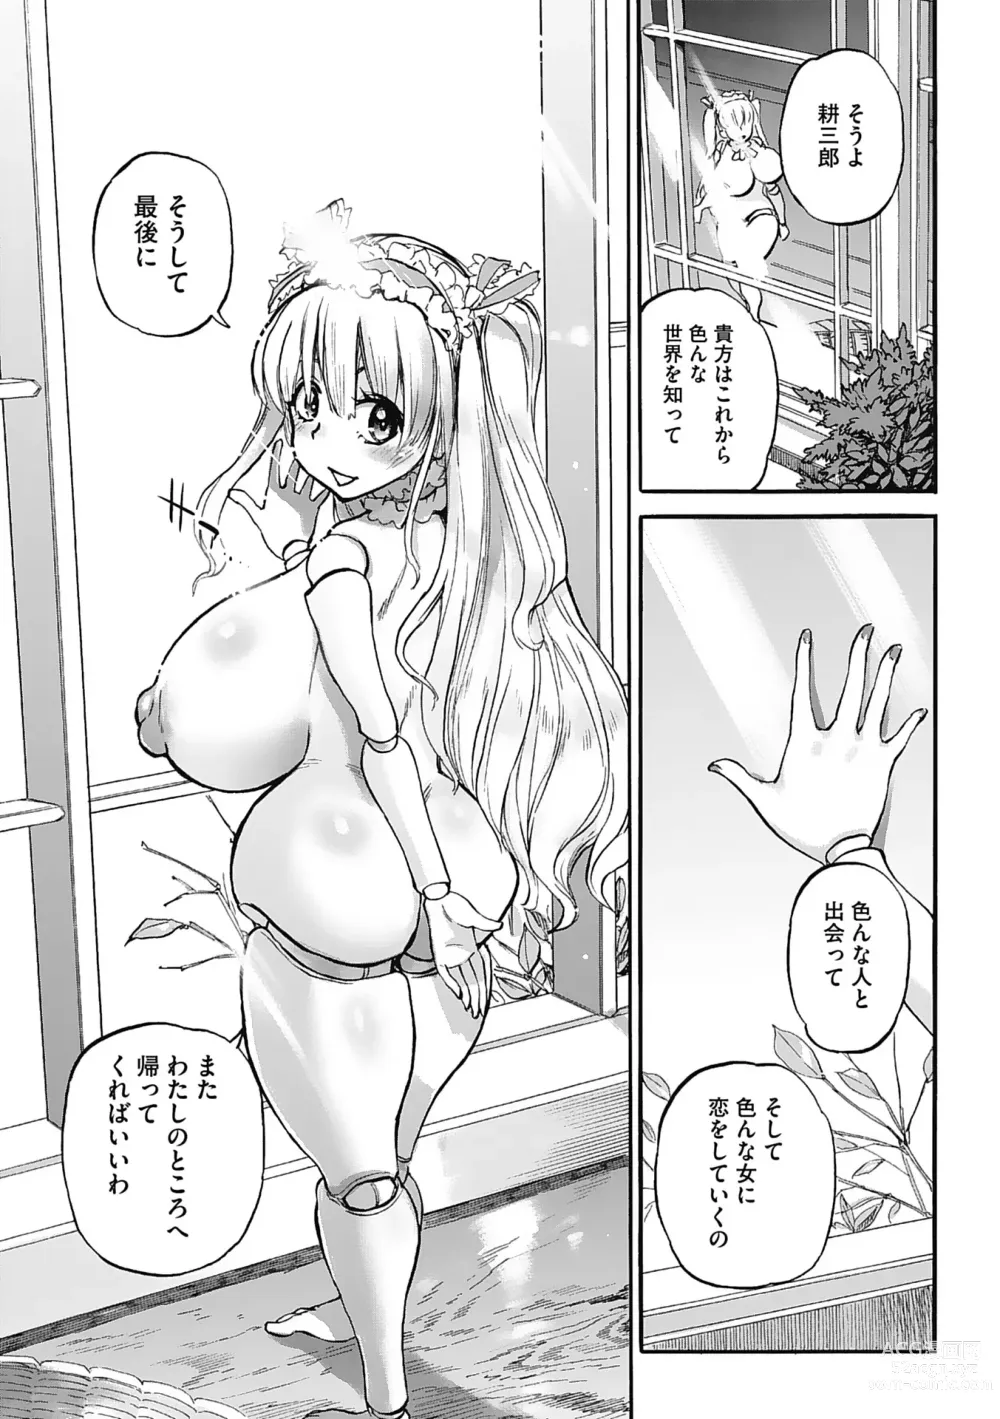 Page 203 of manga Oumagatoki - Ishu Konin Roman Tan -